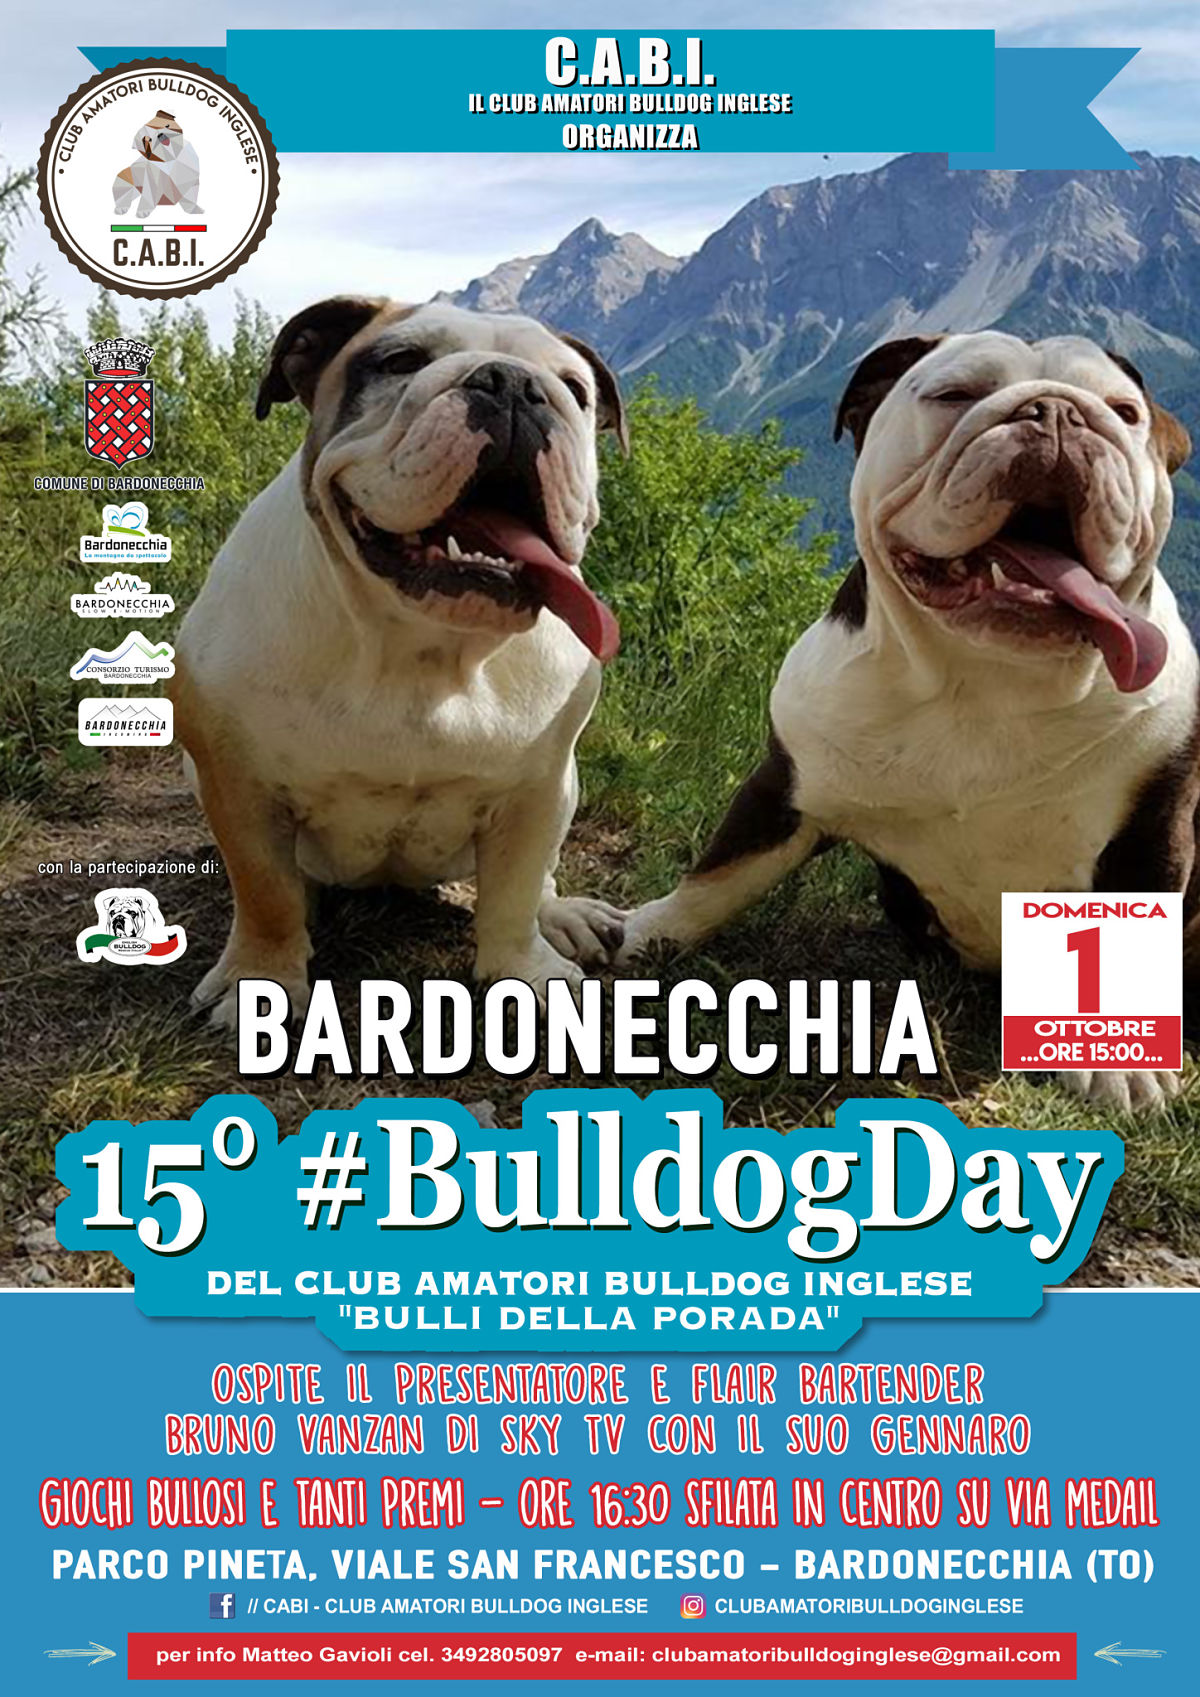 Centinaia di Bulldog inglesi attesi a Bardonecchia per il 15° #BULLDOGDAY solidale del C.A.B.I.